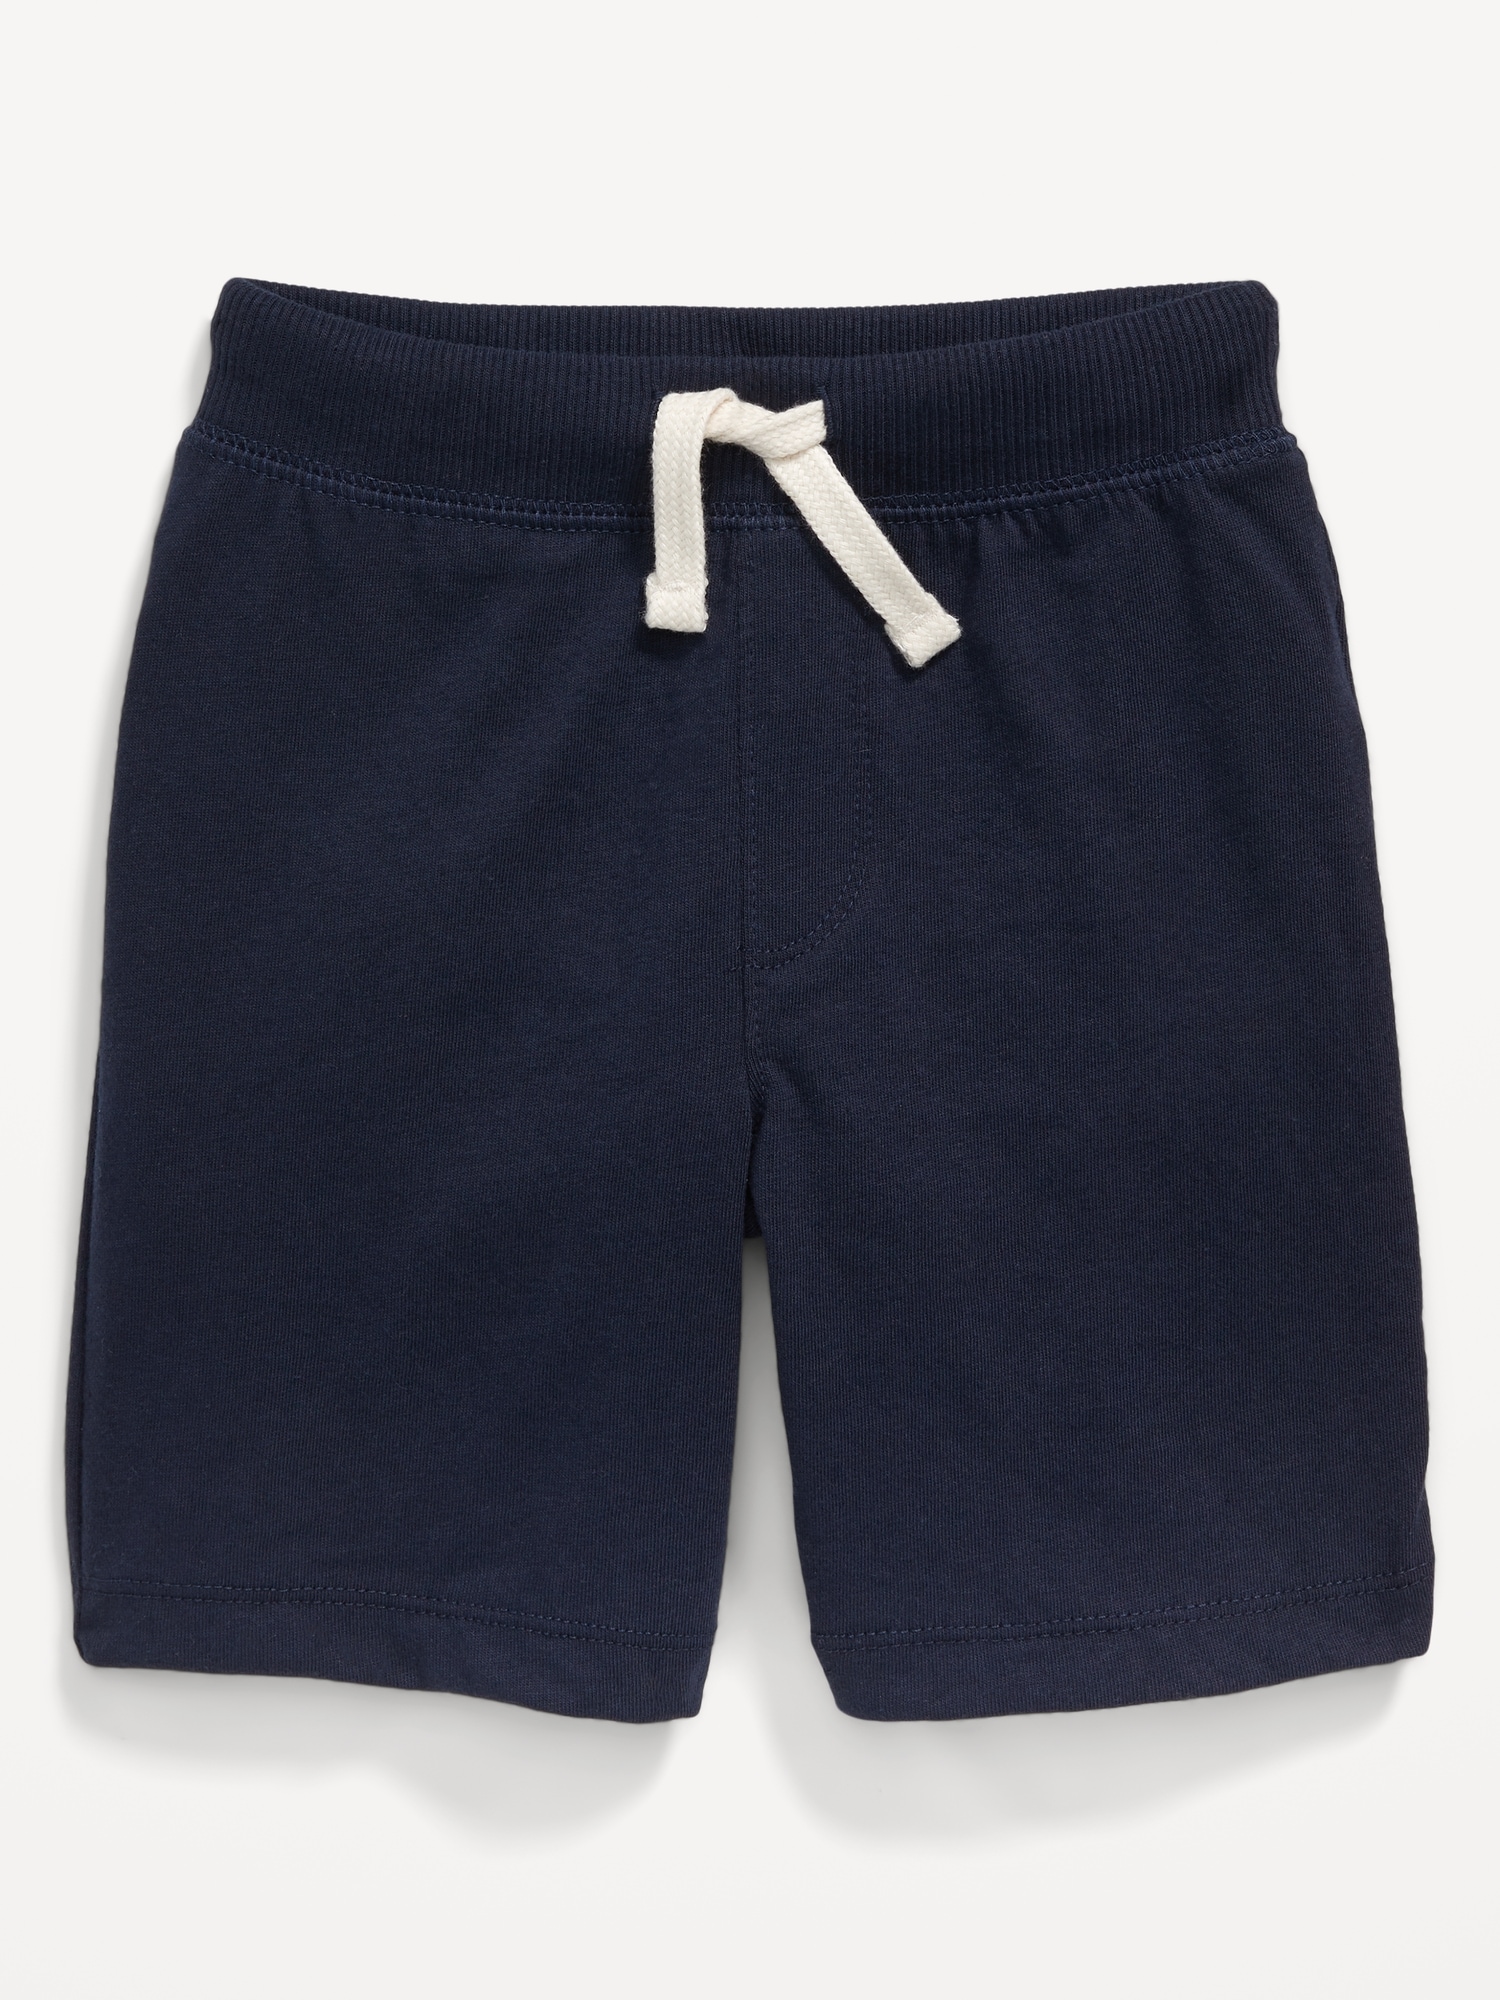 BNWT Boys Sz 1 Kmart H & T Blue Elastic Waist Jersey Knit Athletic Shorts